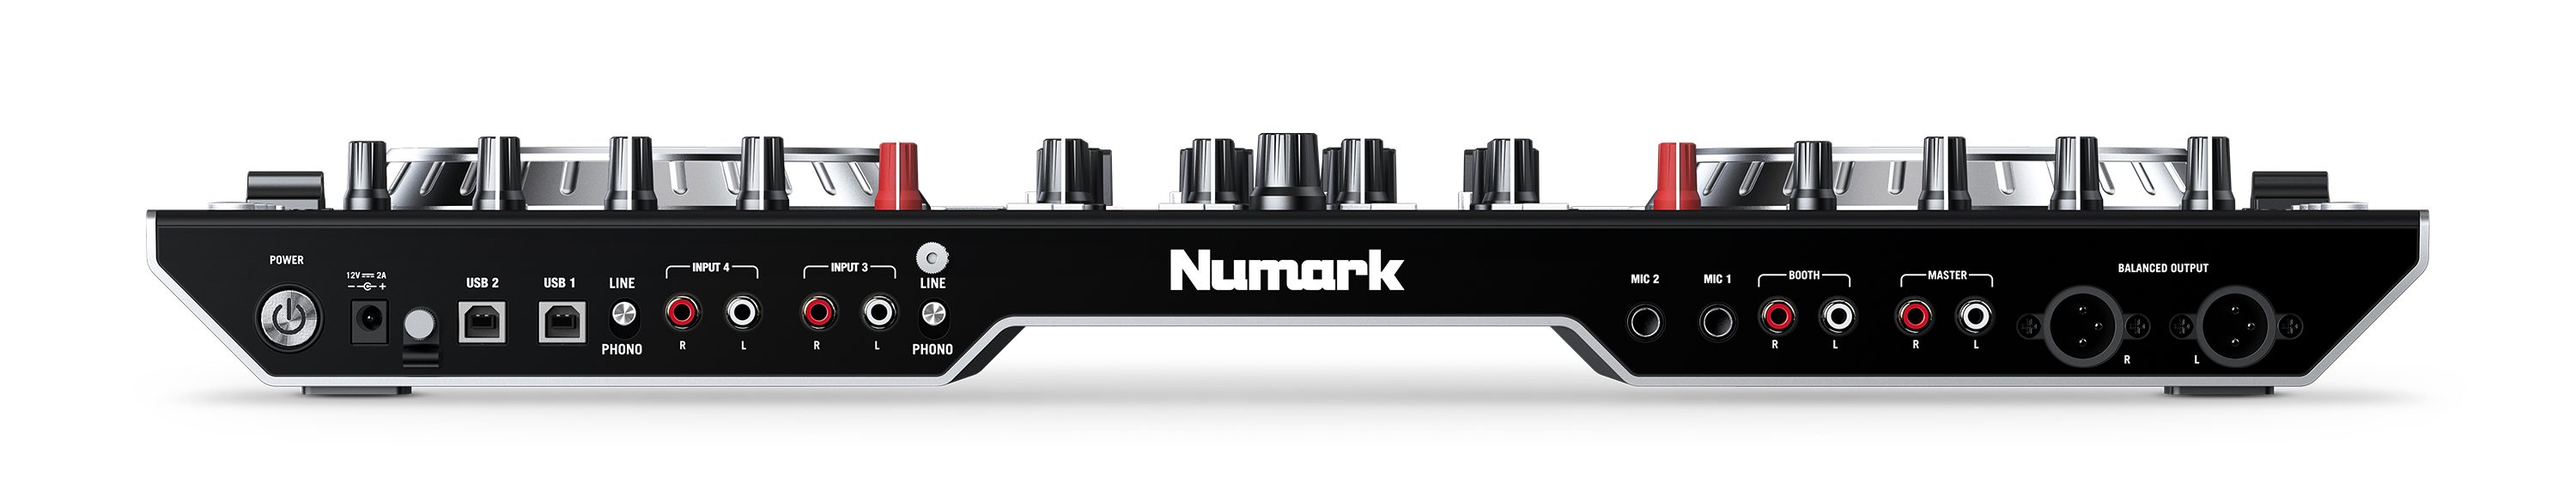 Numark presenta el nuevo controlador DJ de 4 canales NS6II